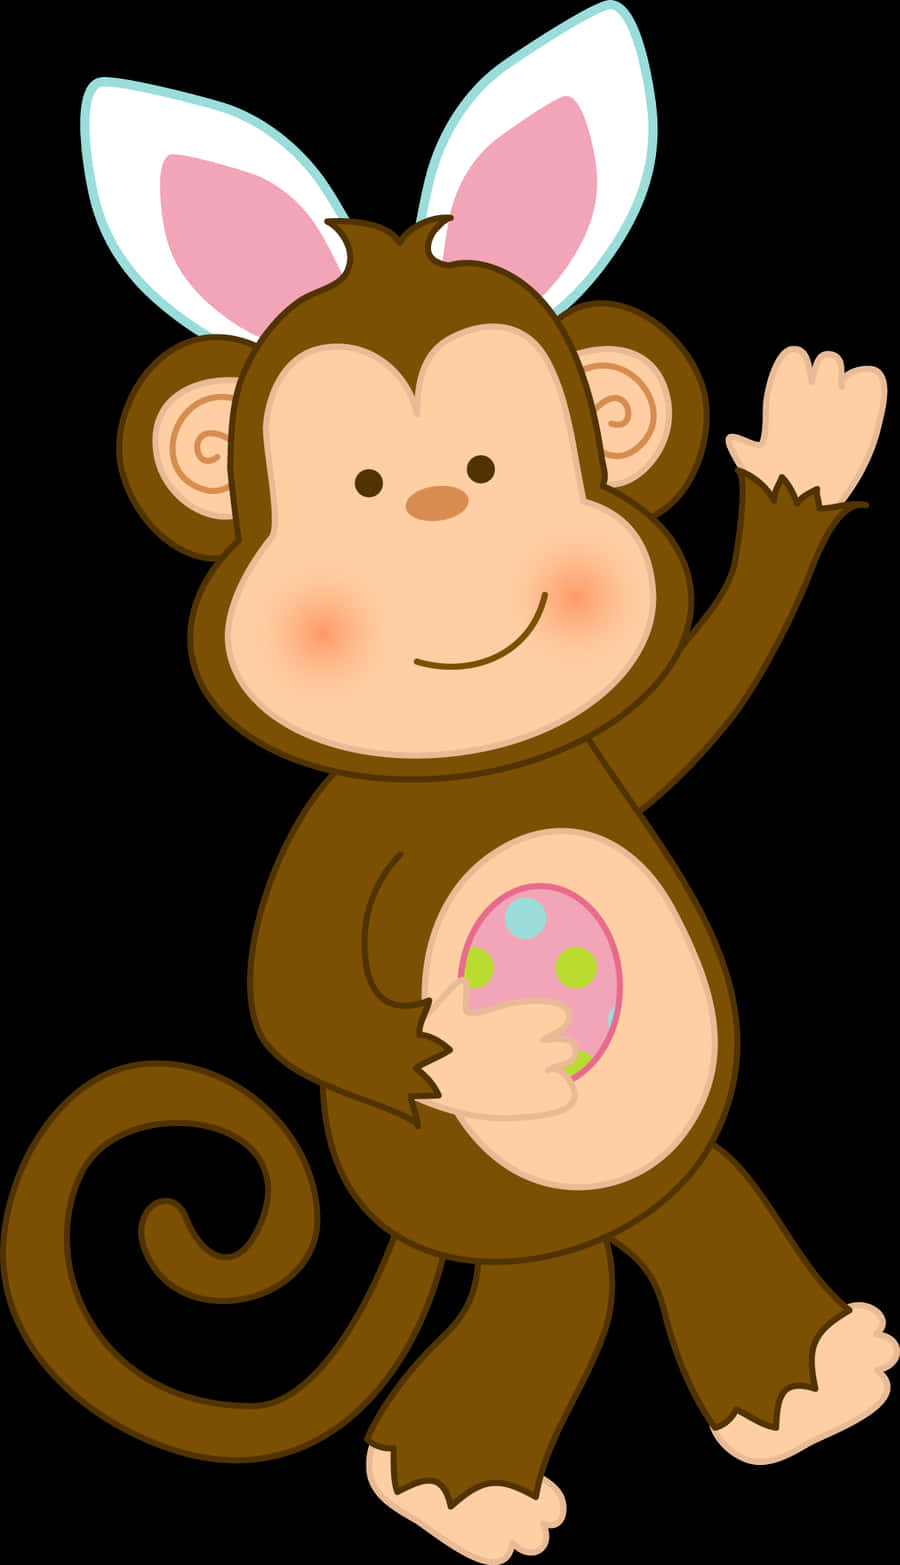 Cartoon Monkey With Egg Illustration PNG image